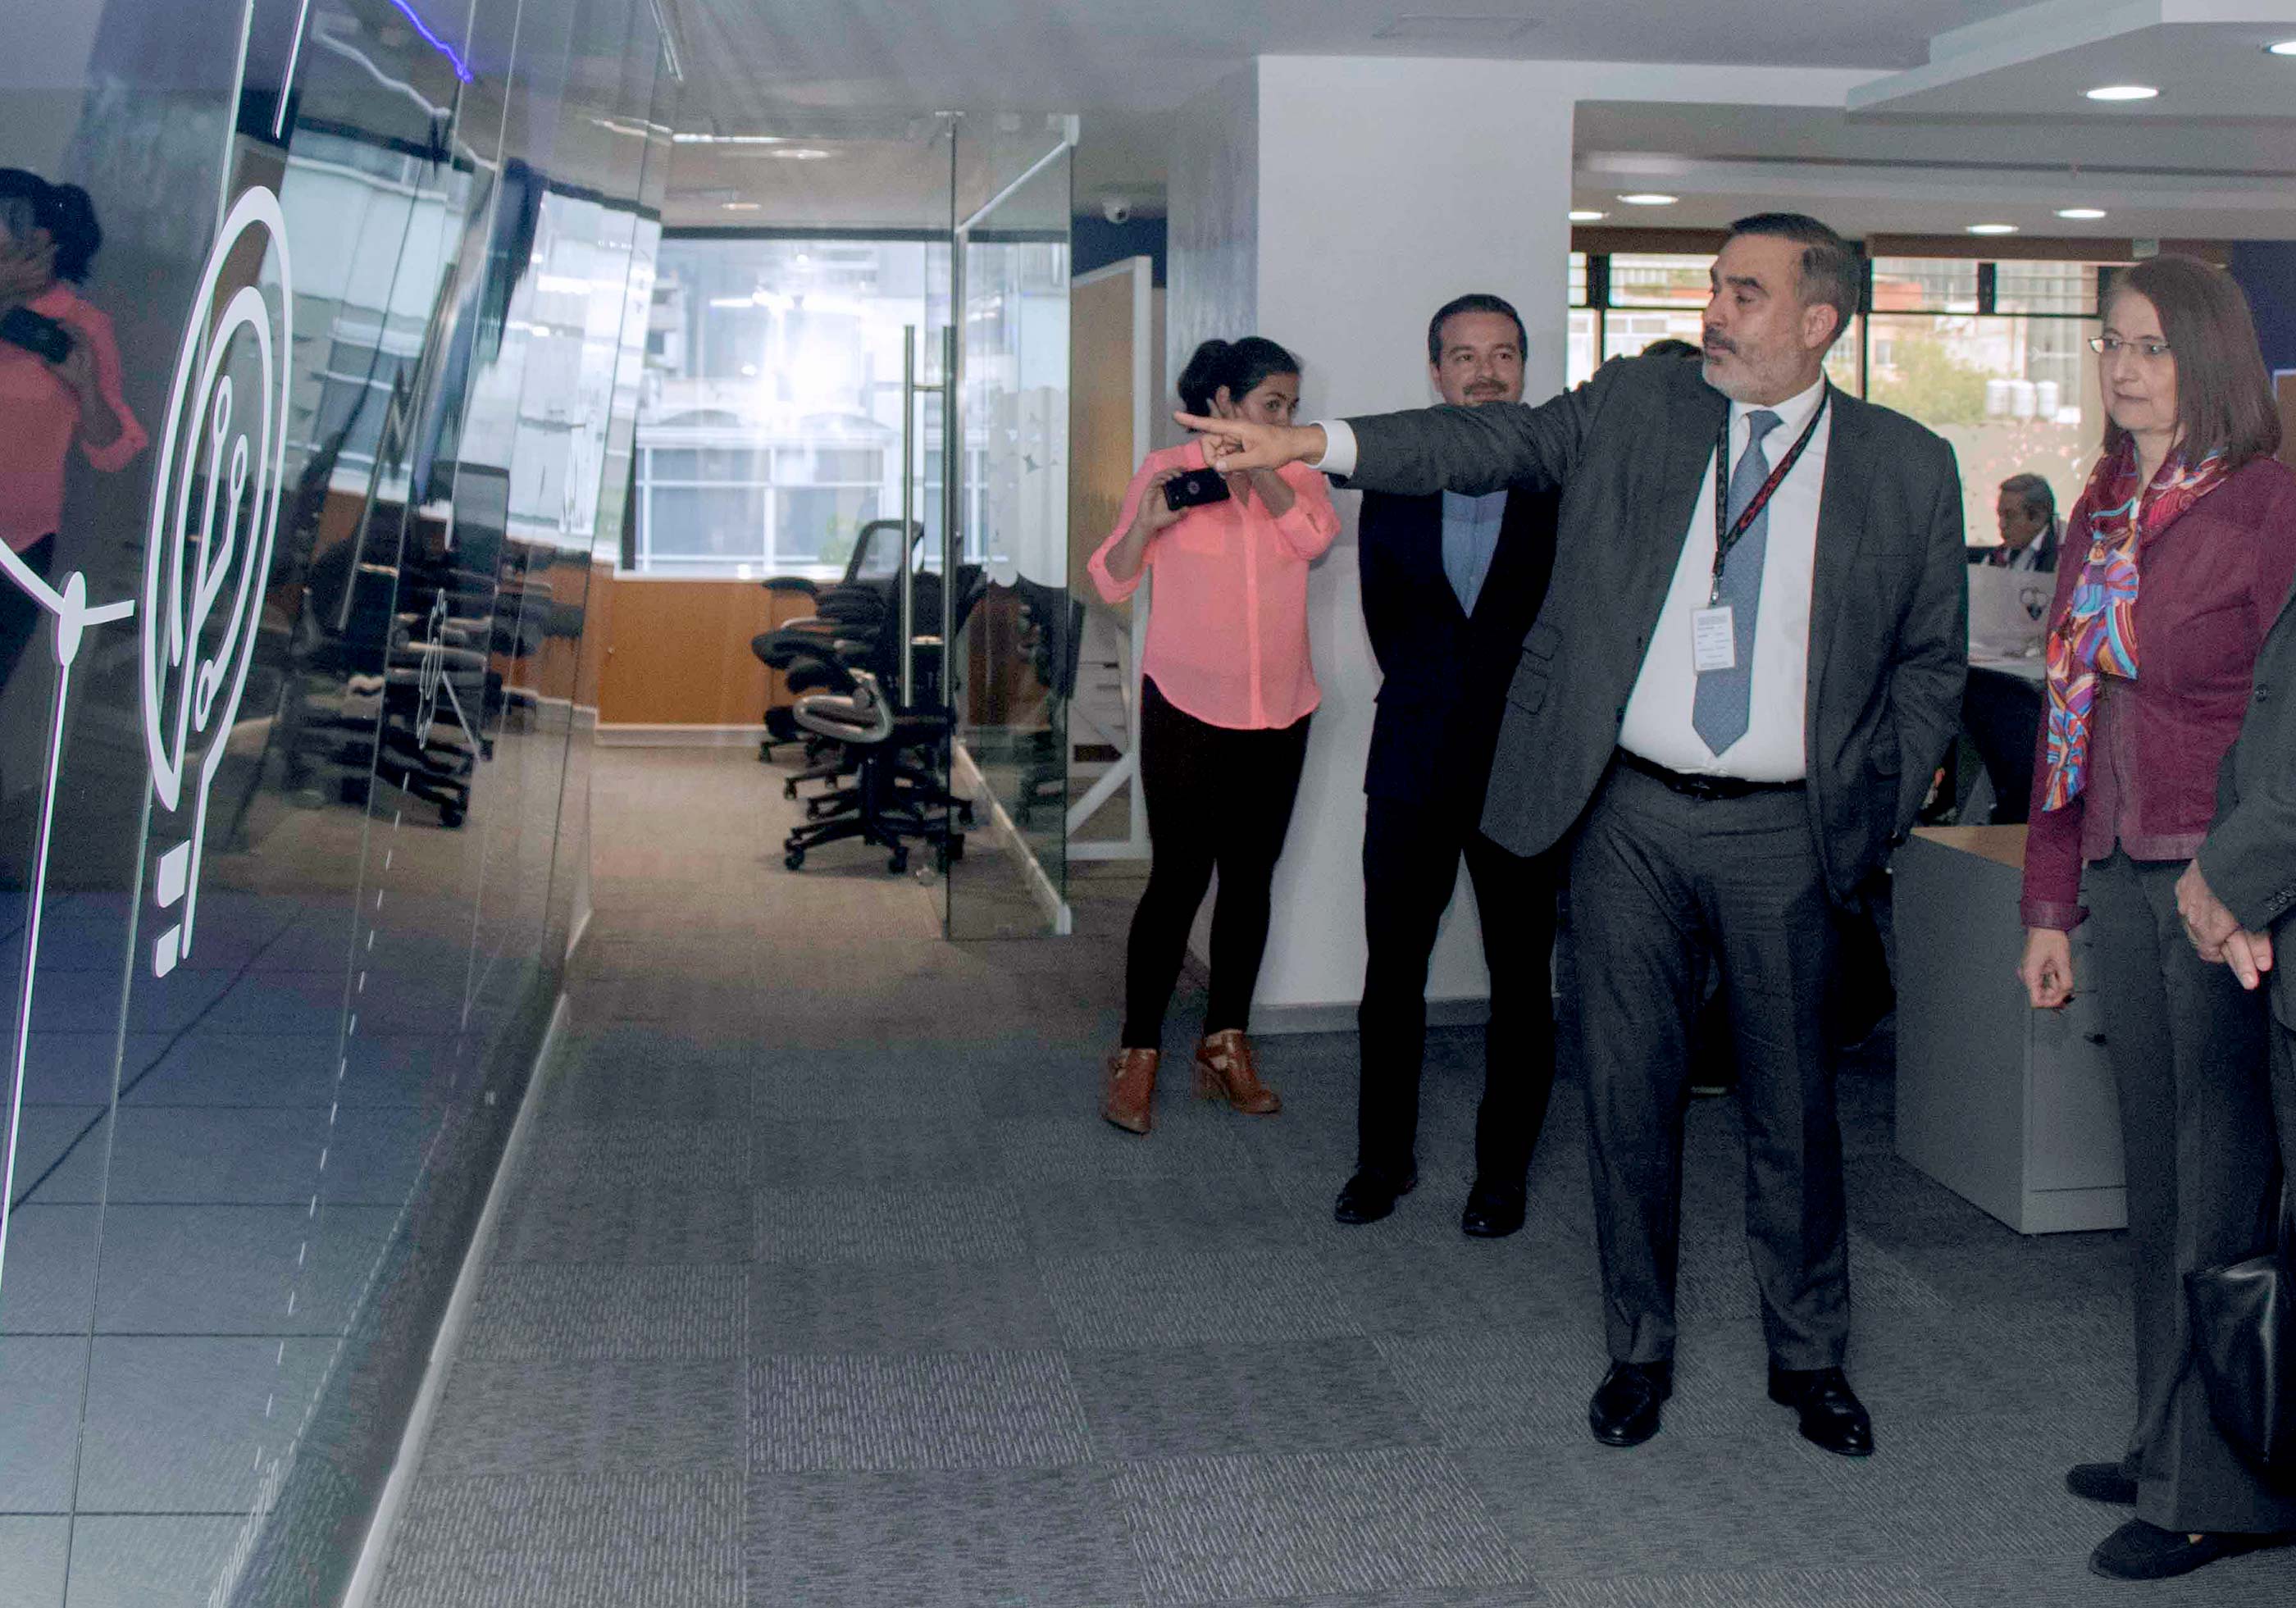 Inaugura Subsecretaria de Comercio Exterior nuevo centro de datos de agentes aduanales